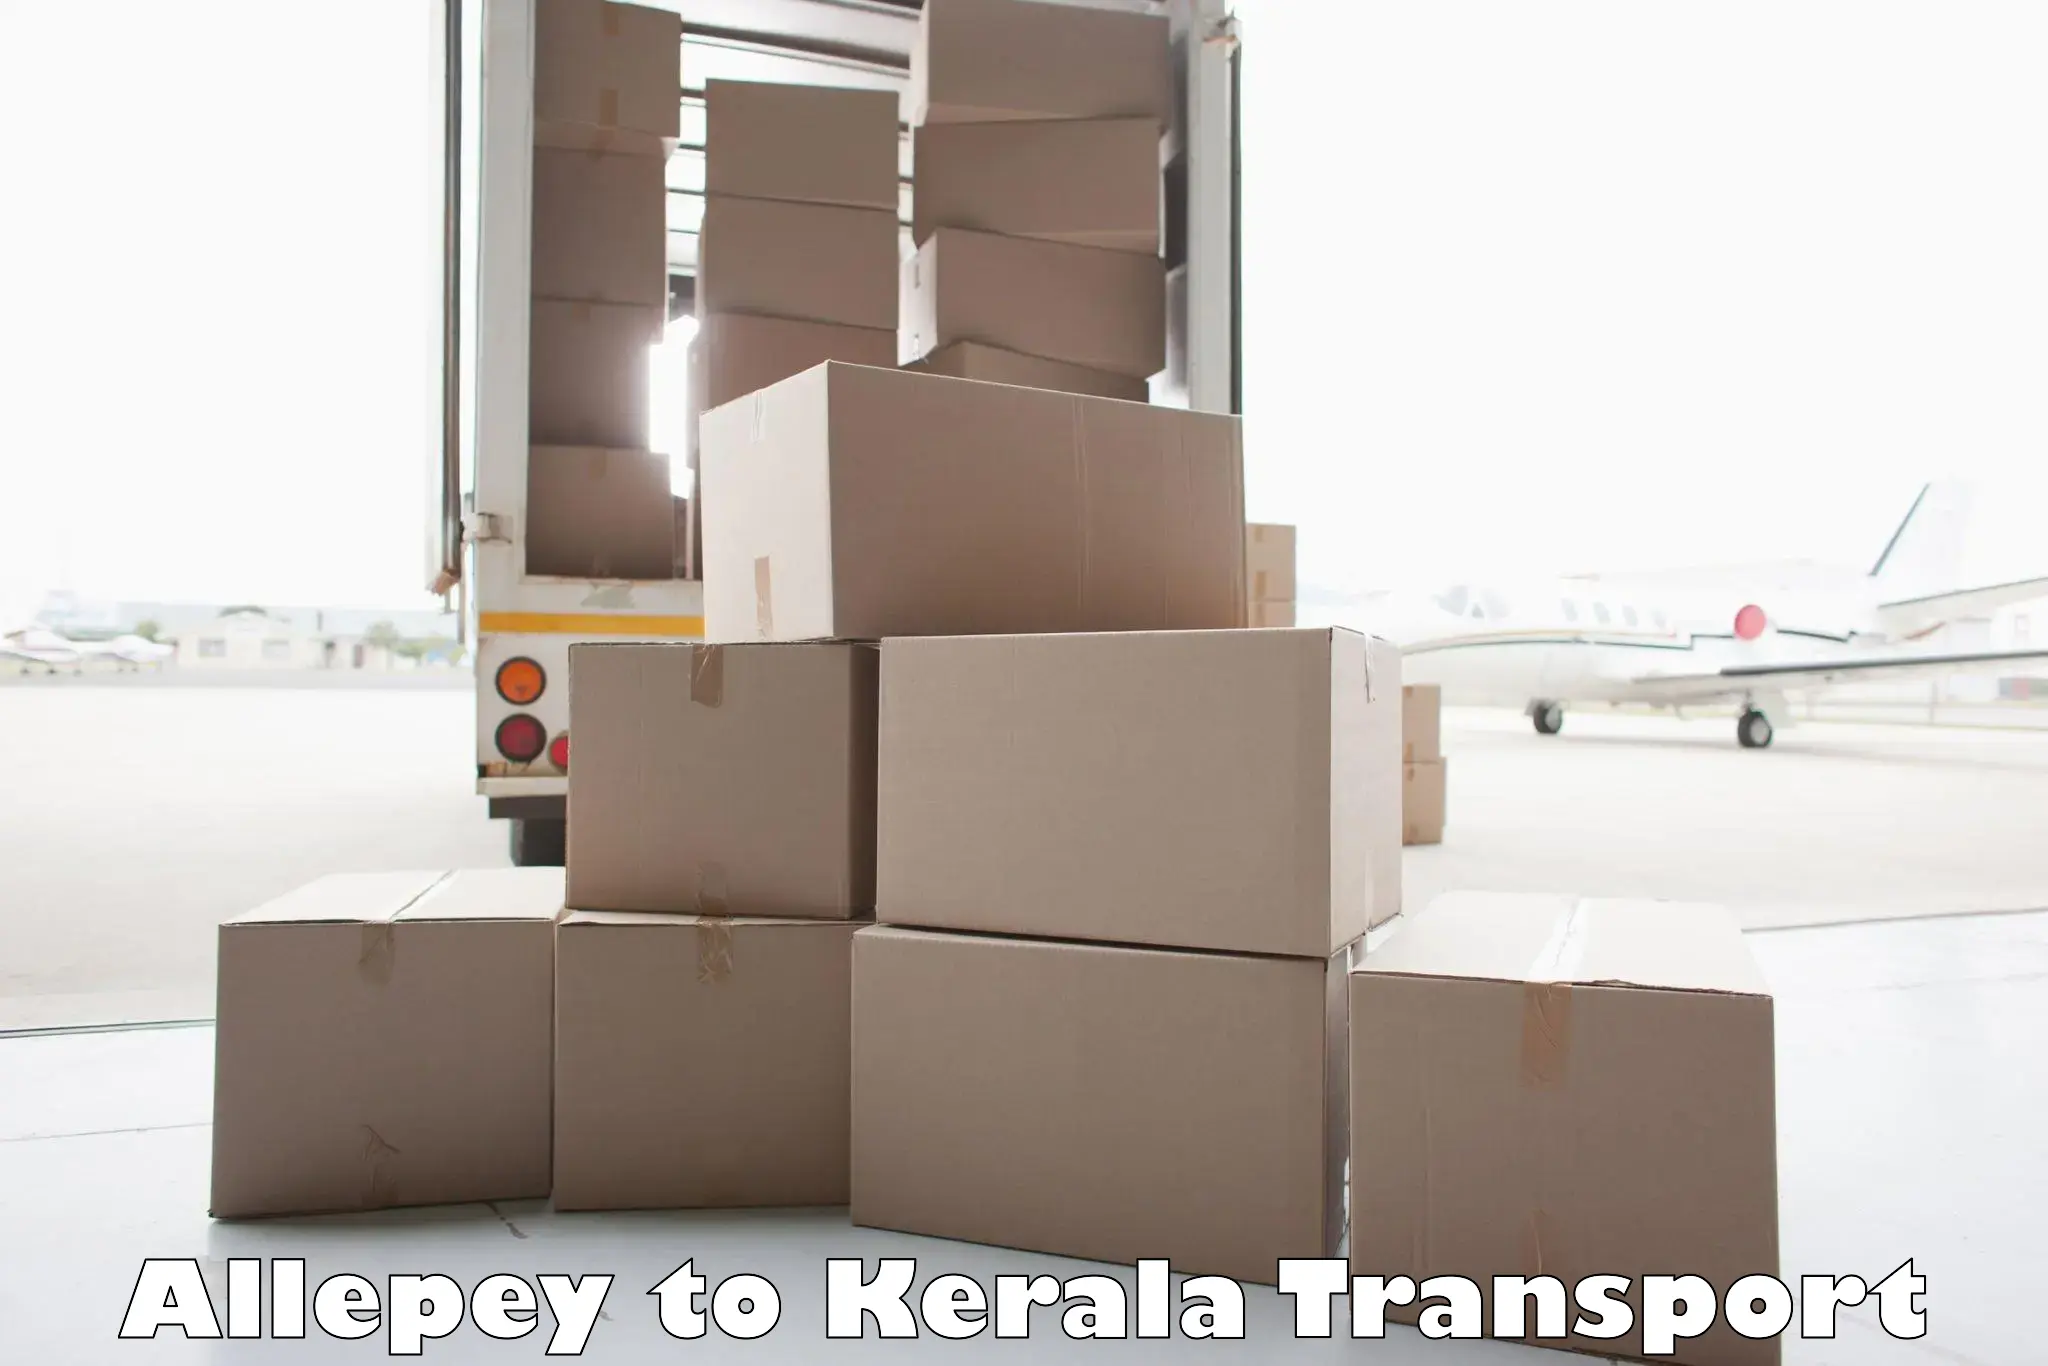 Furniture transport service Allepey to Idukki